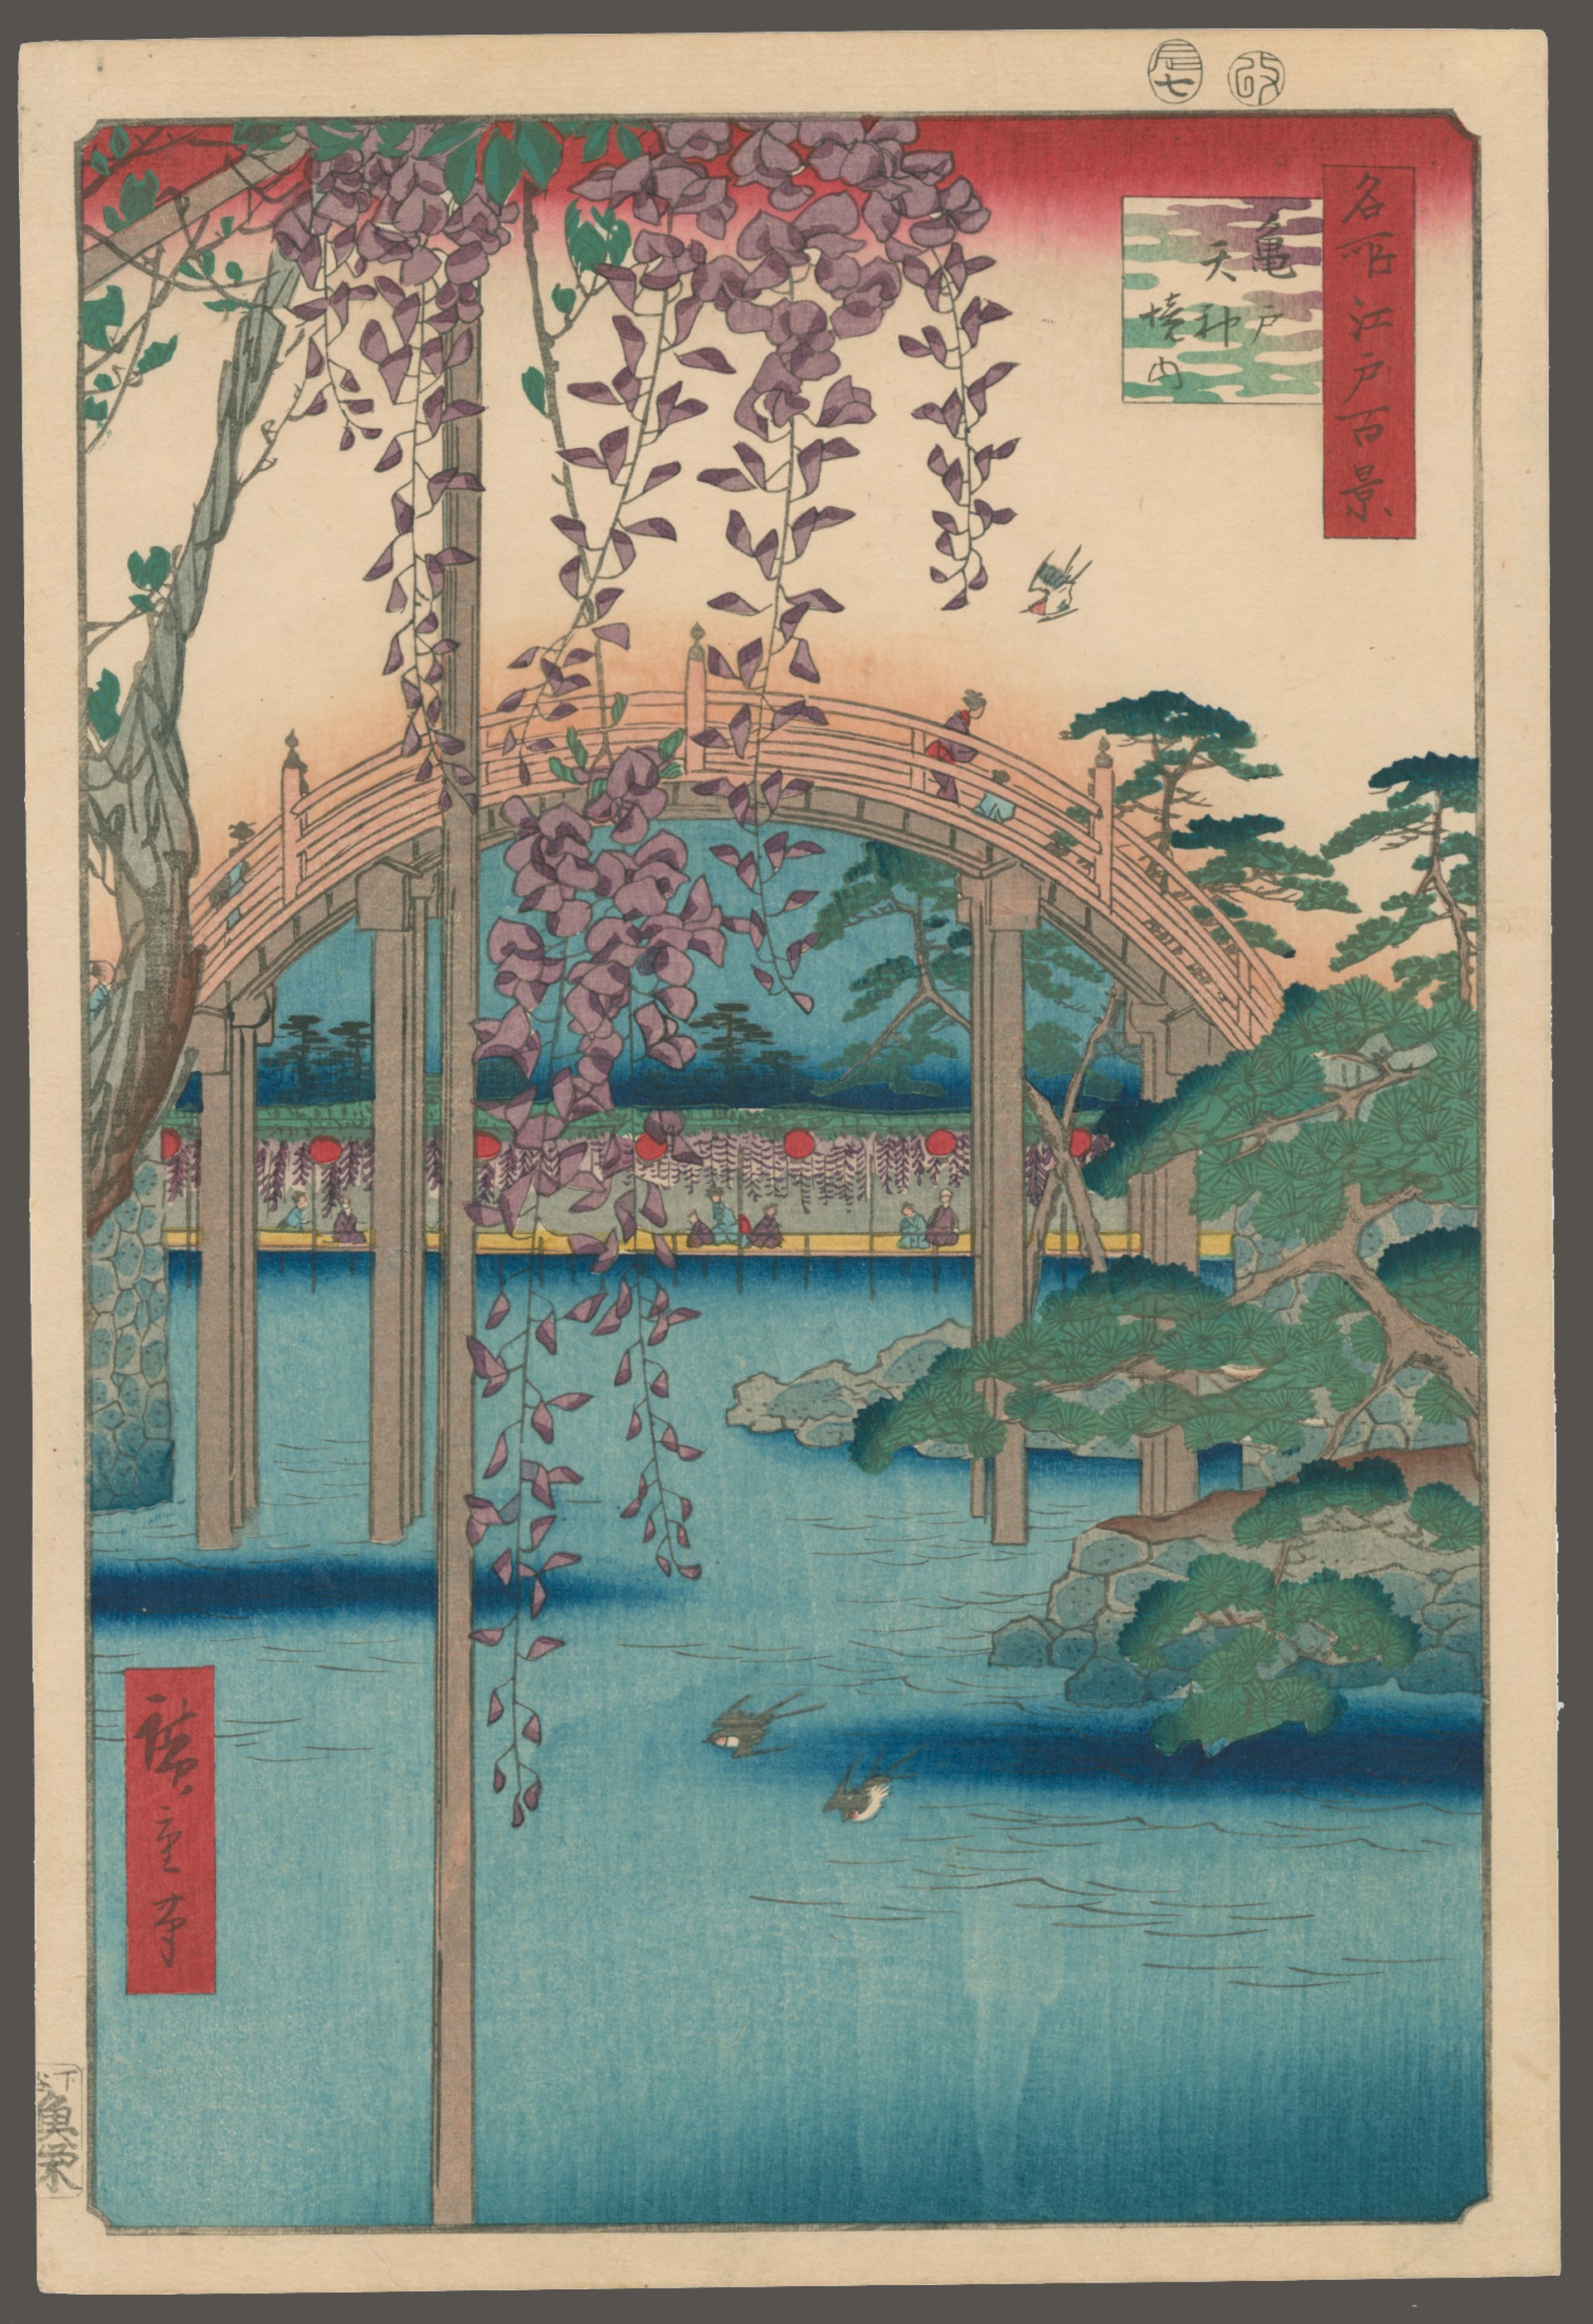 #65 Inside Kameido Tenjin Shrine 100 Views of Edo by Hiroshige